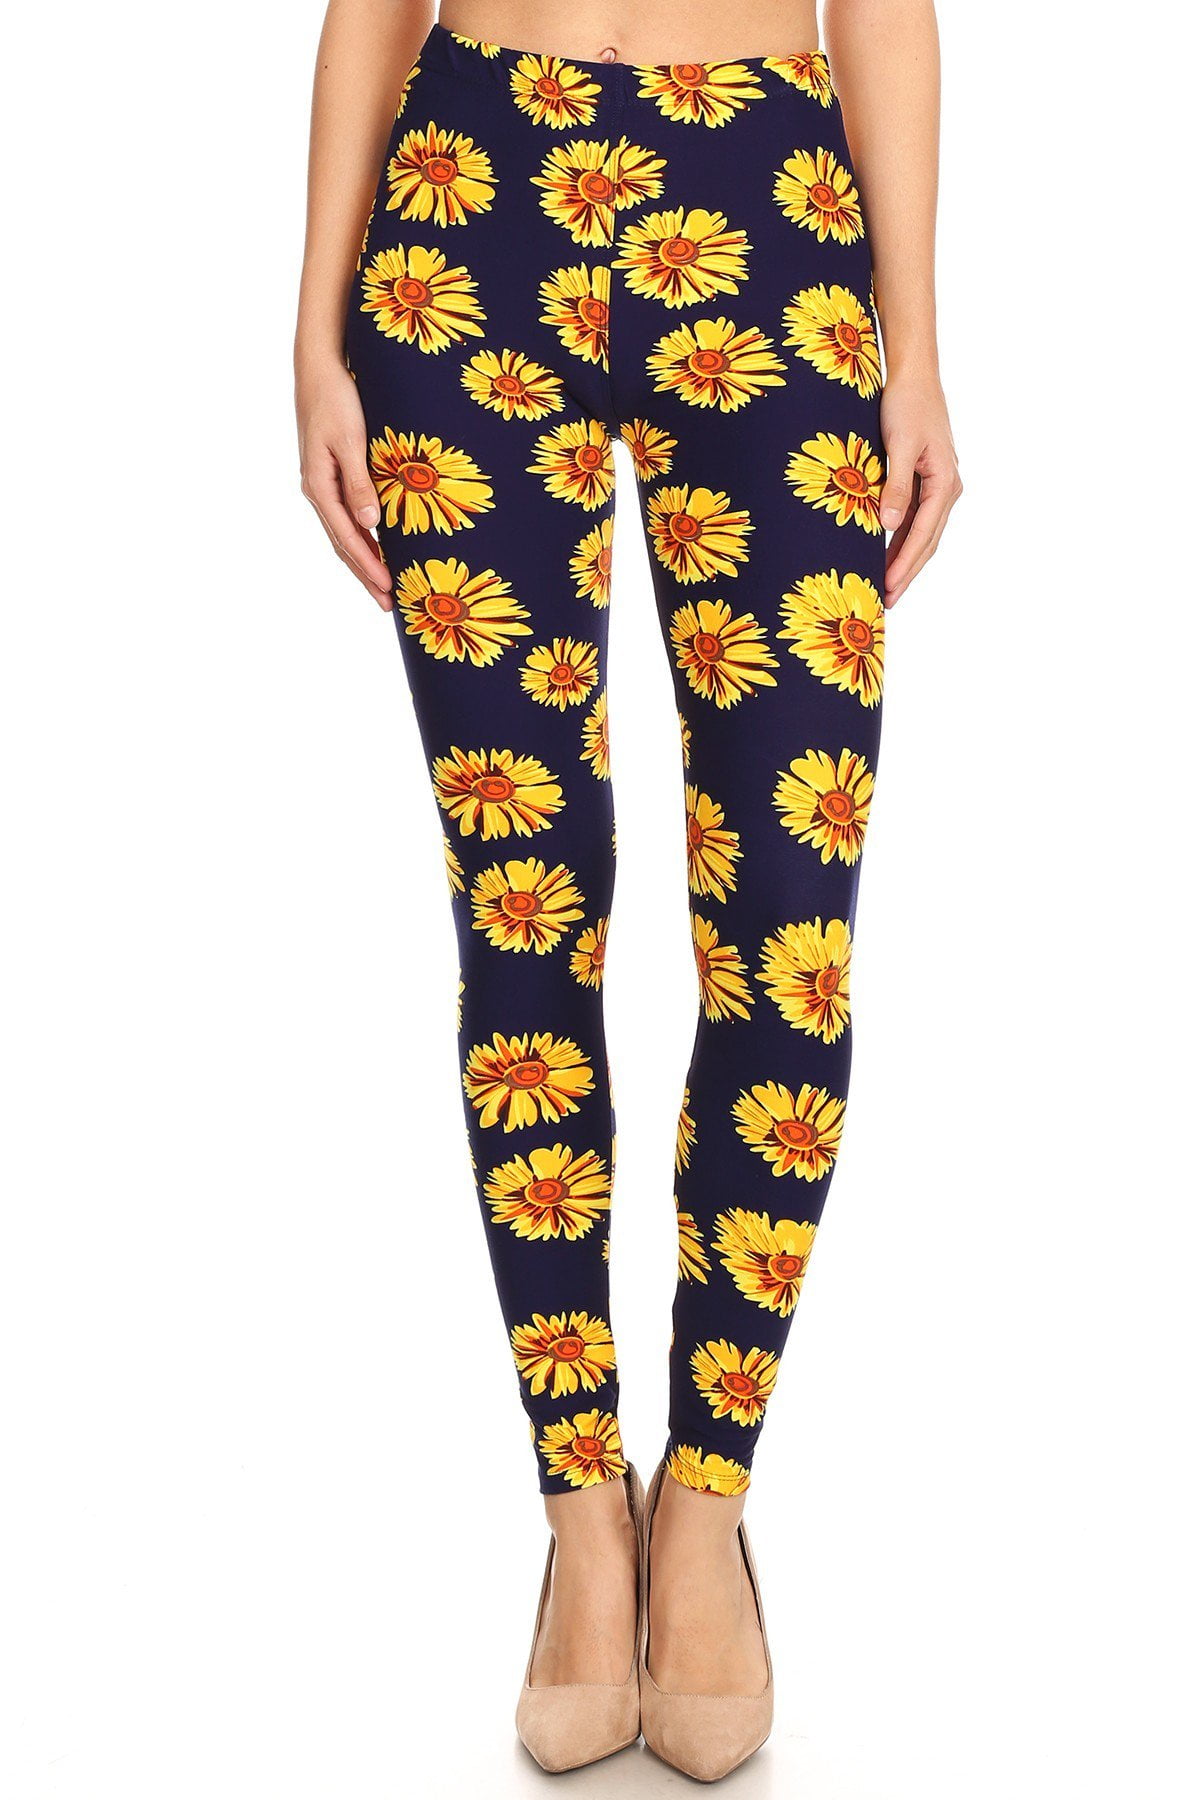 Generic Women's Summer Flowers Print S Vest Tank Legging Yoga Suit 2023 Plus  Size S-8xl